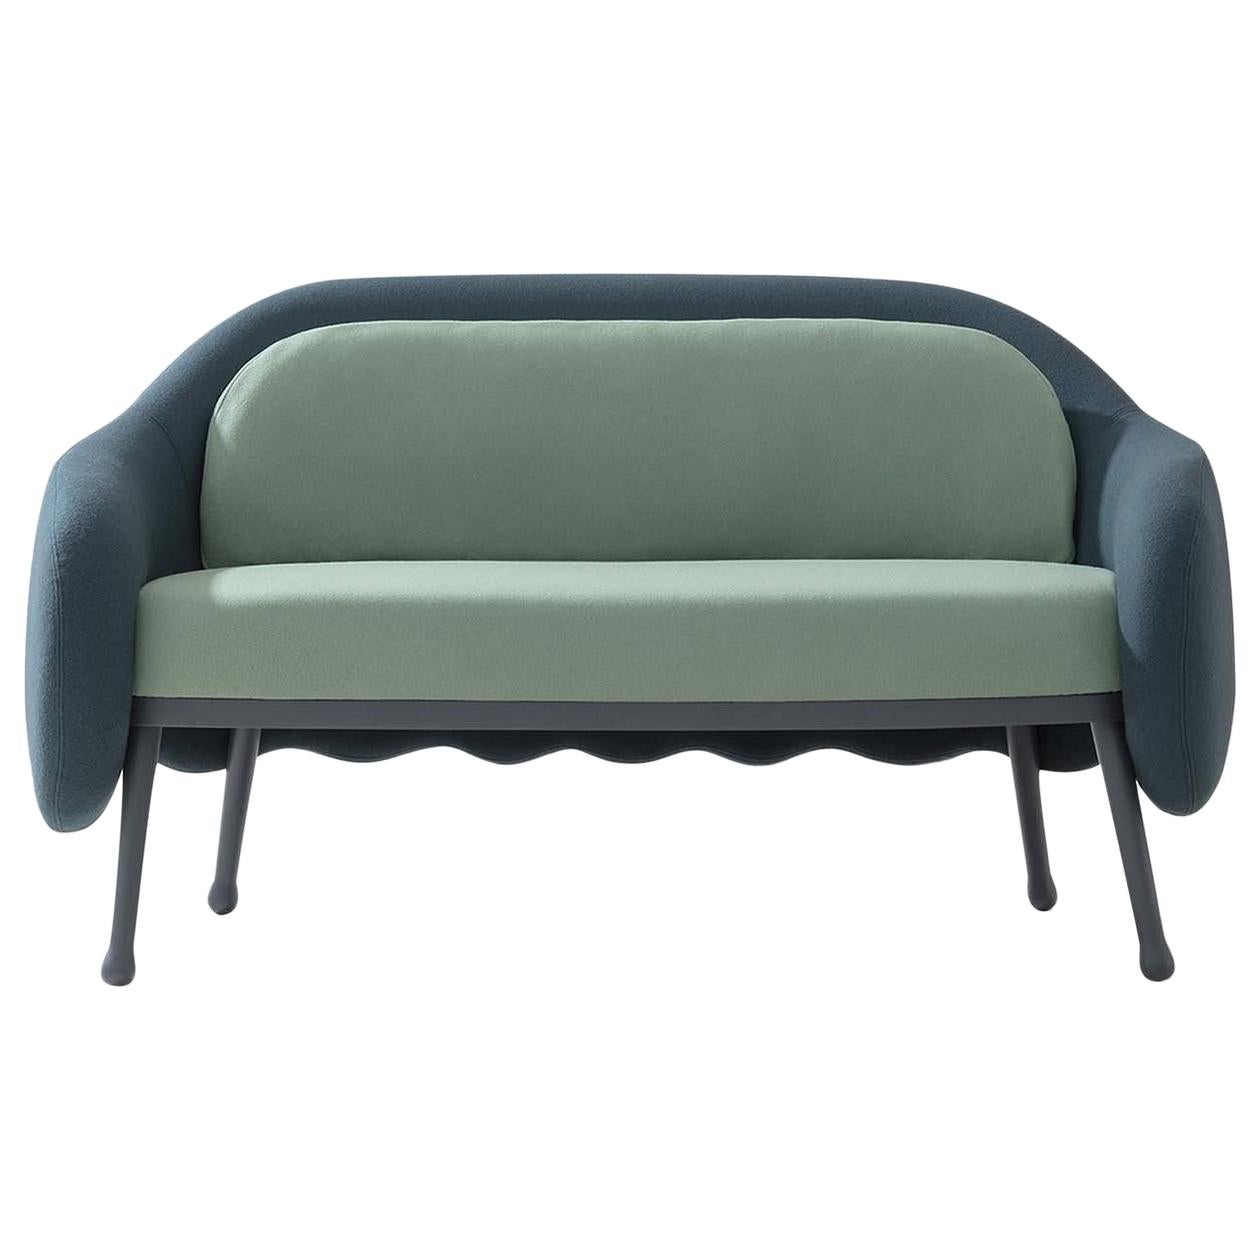 Corolla 273 Green and Blue Sofa by Cristina Celestino For Sale